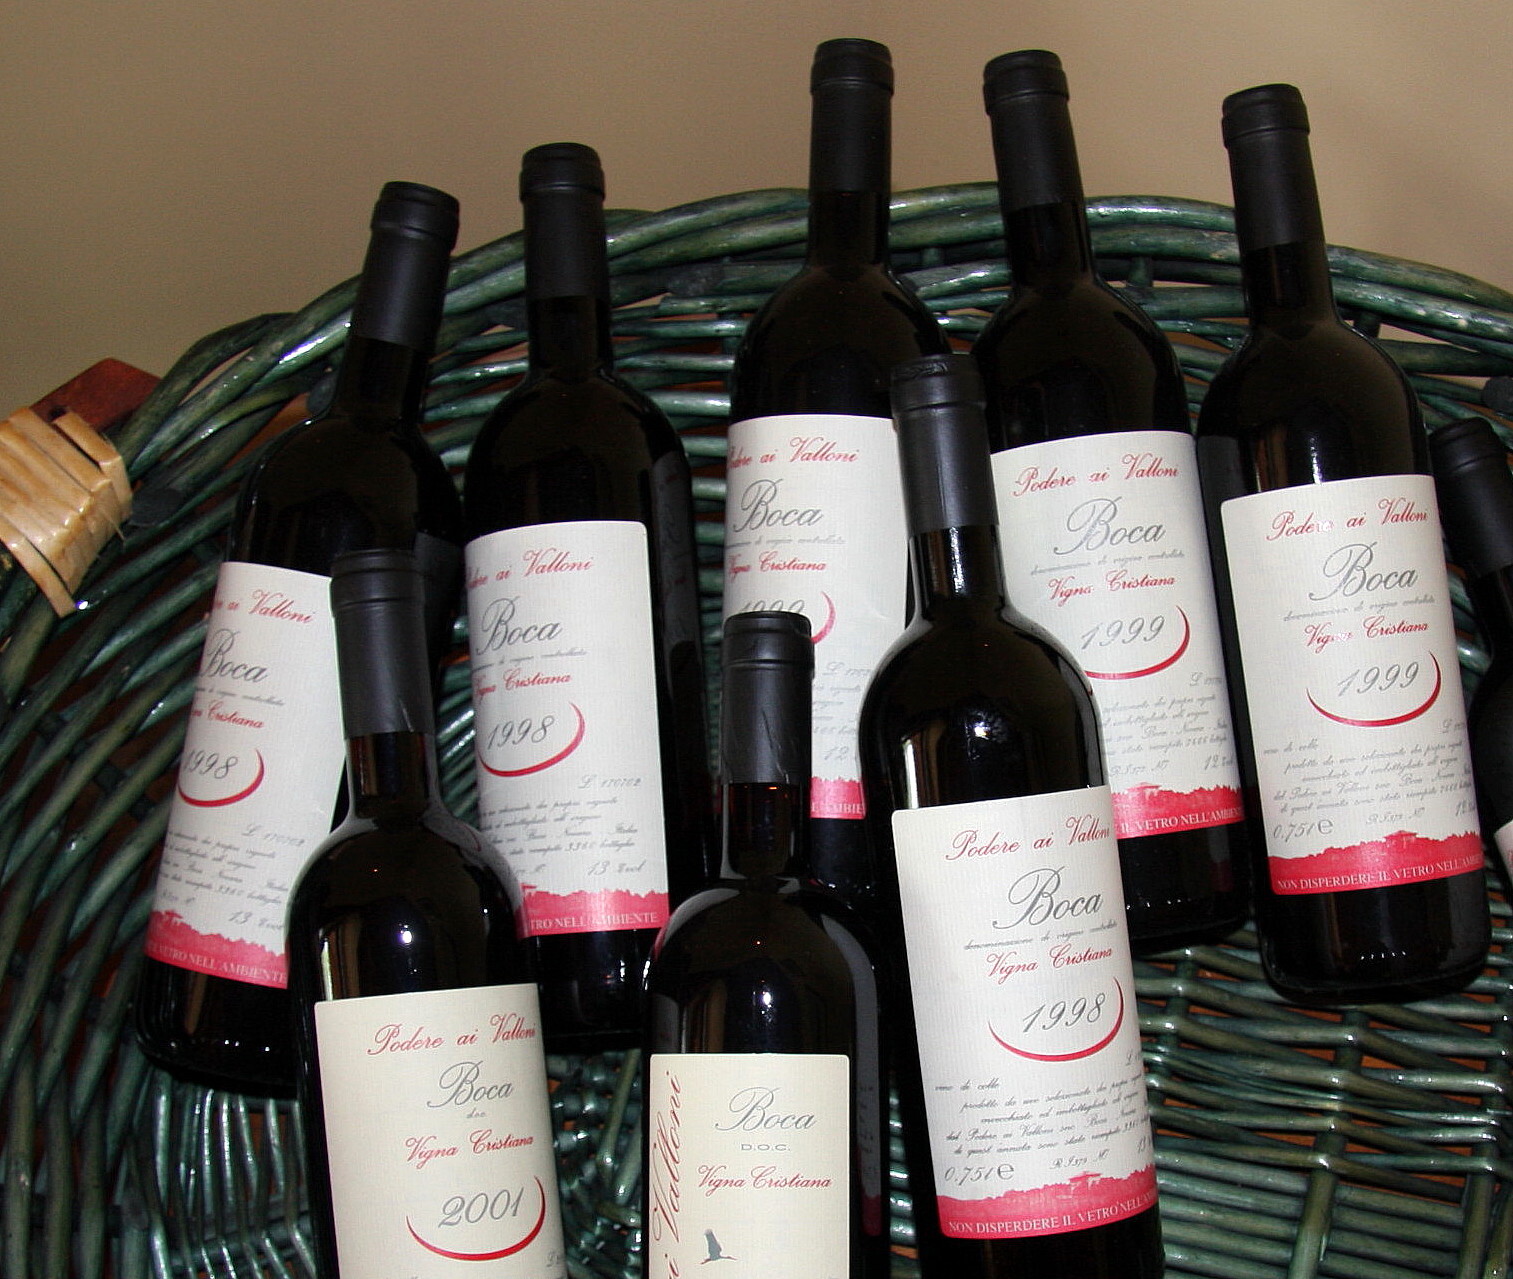 Le bottiglie di vino biologico Boca doc e Nebbiolo doc prodotte dal Podere Ai in Boca